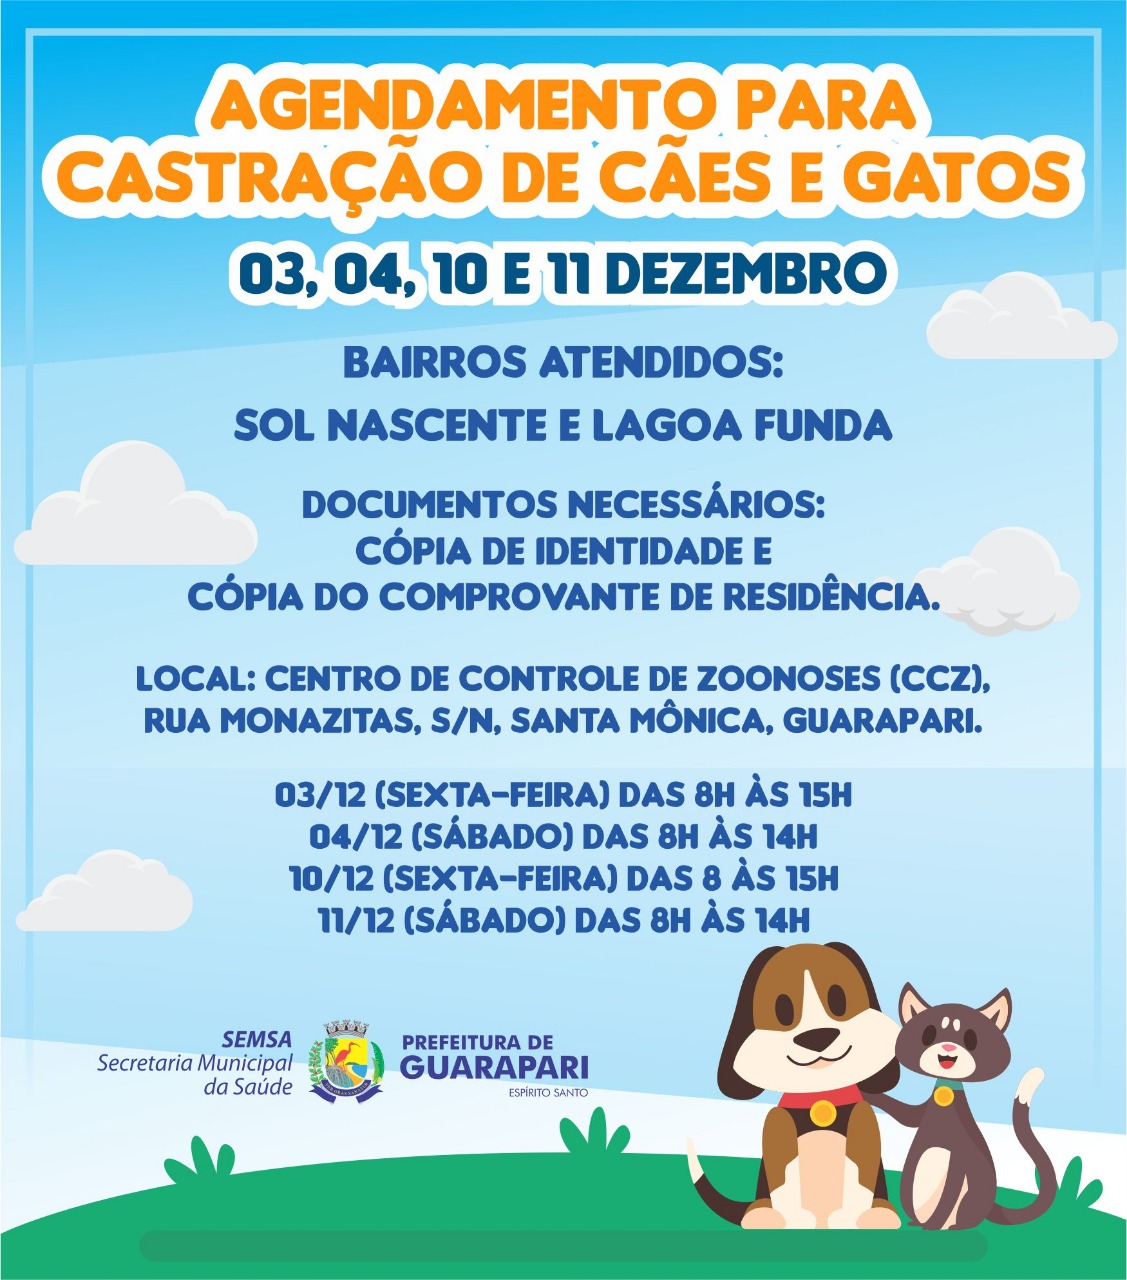 Prefeitura de Guarapari realiza ação de agendamento para castração de cães e gatos dos bairros Sol Nascente e Lagoa Funda